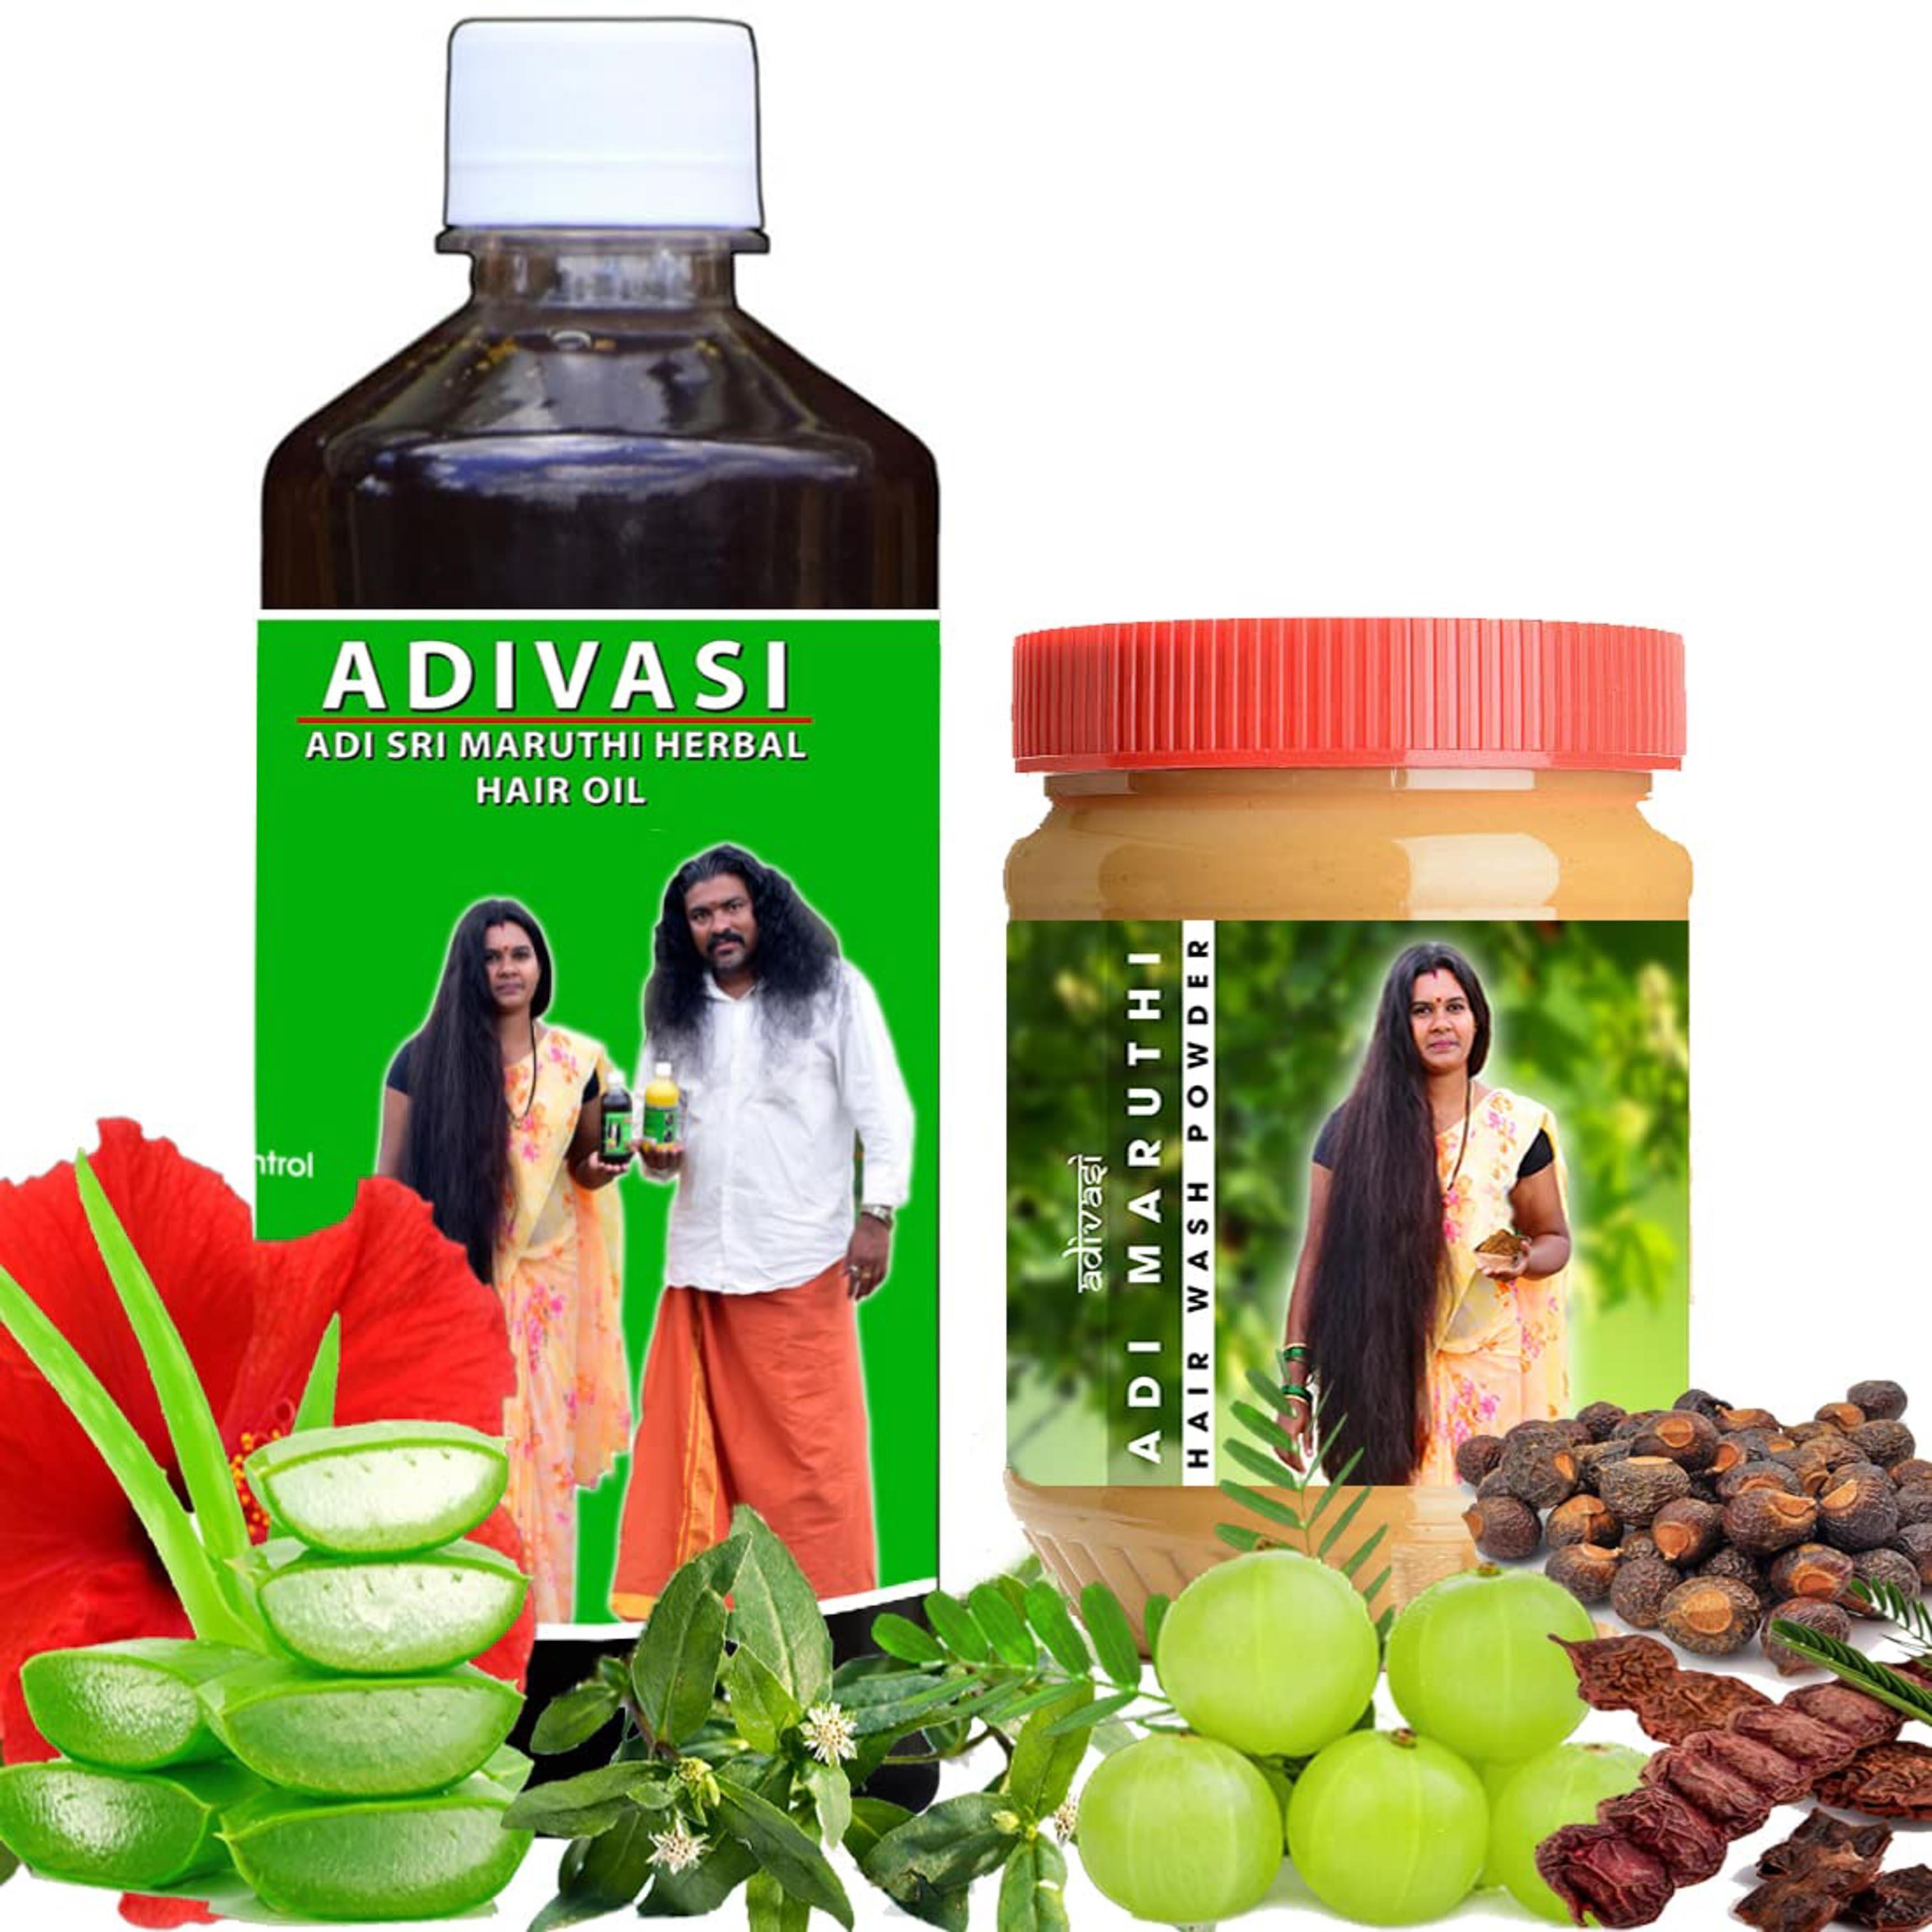 Adi Sri Maruthi Herbal Hair Oil 500Ml And Shampoo Powder 200Gm Pack Of 2 -  JioMart